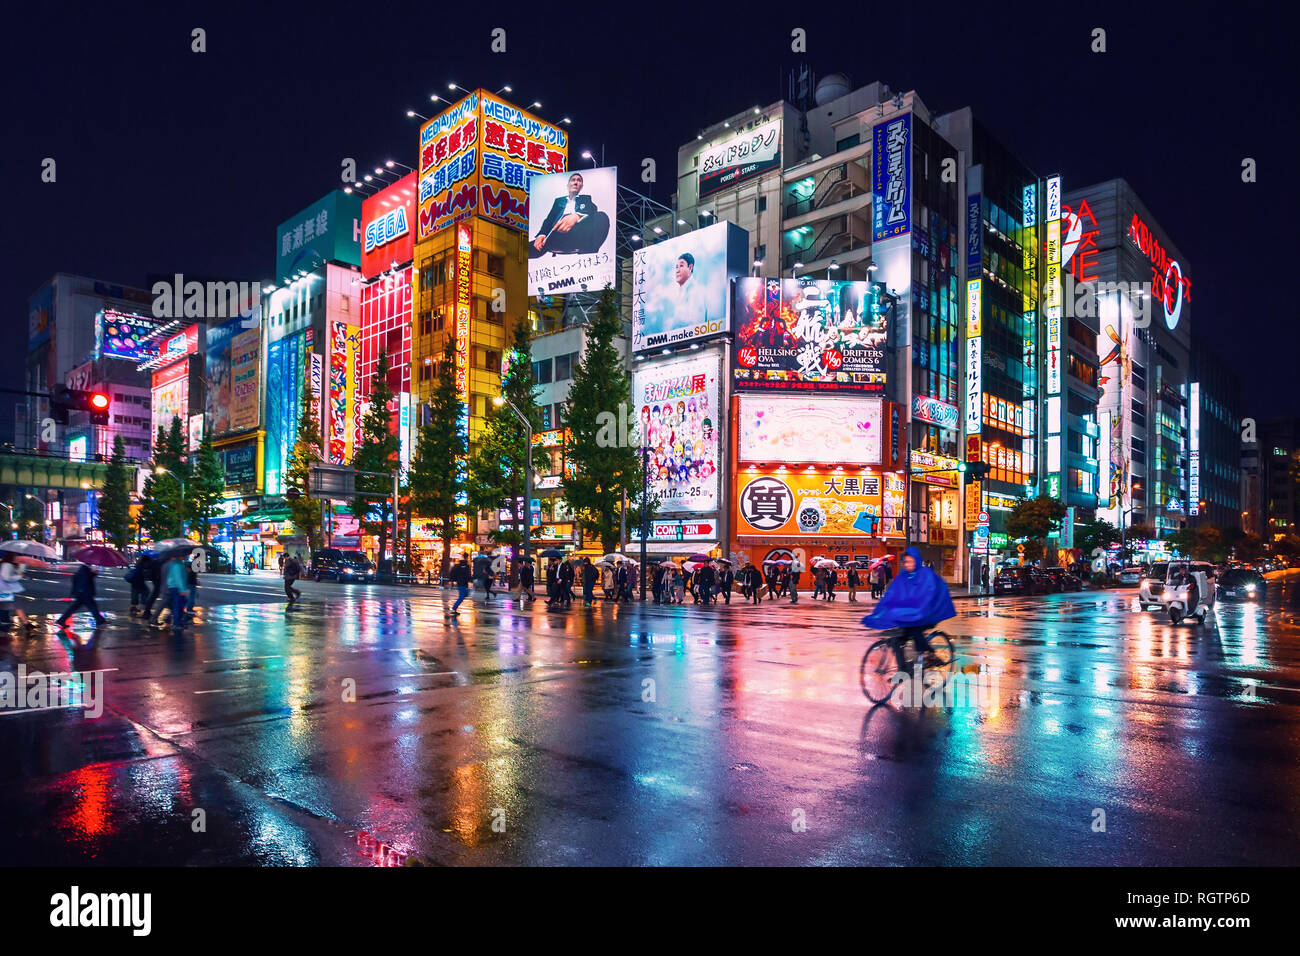 Neonröhren und Reklametafeln Werbung auf Gebäuden in Akihabara bei regnerischen Nacht, Tokio, Japan Stockfoto